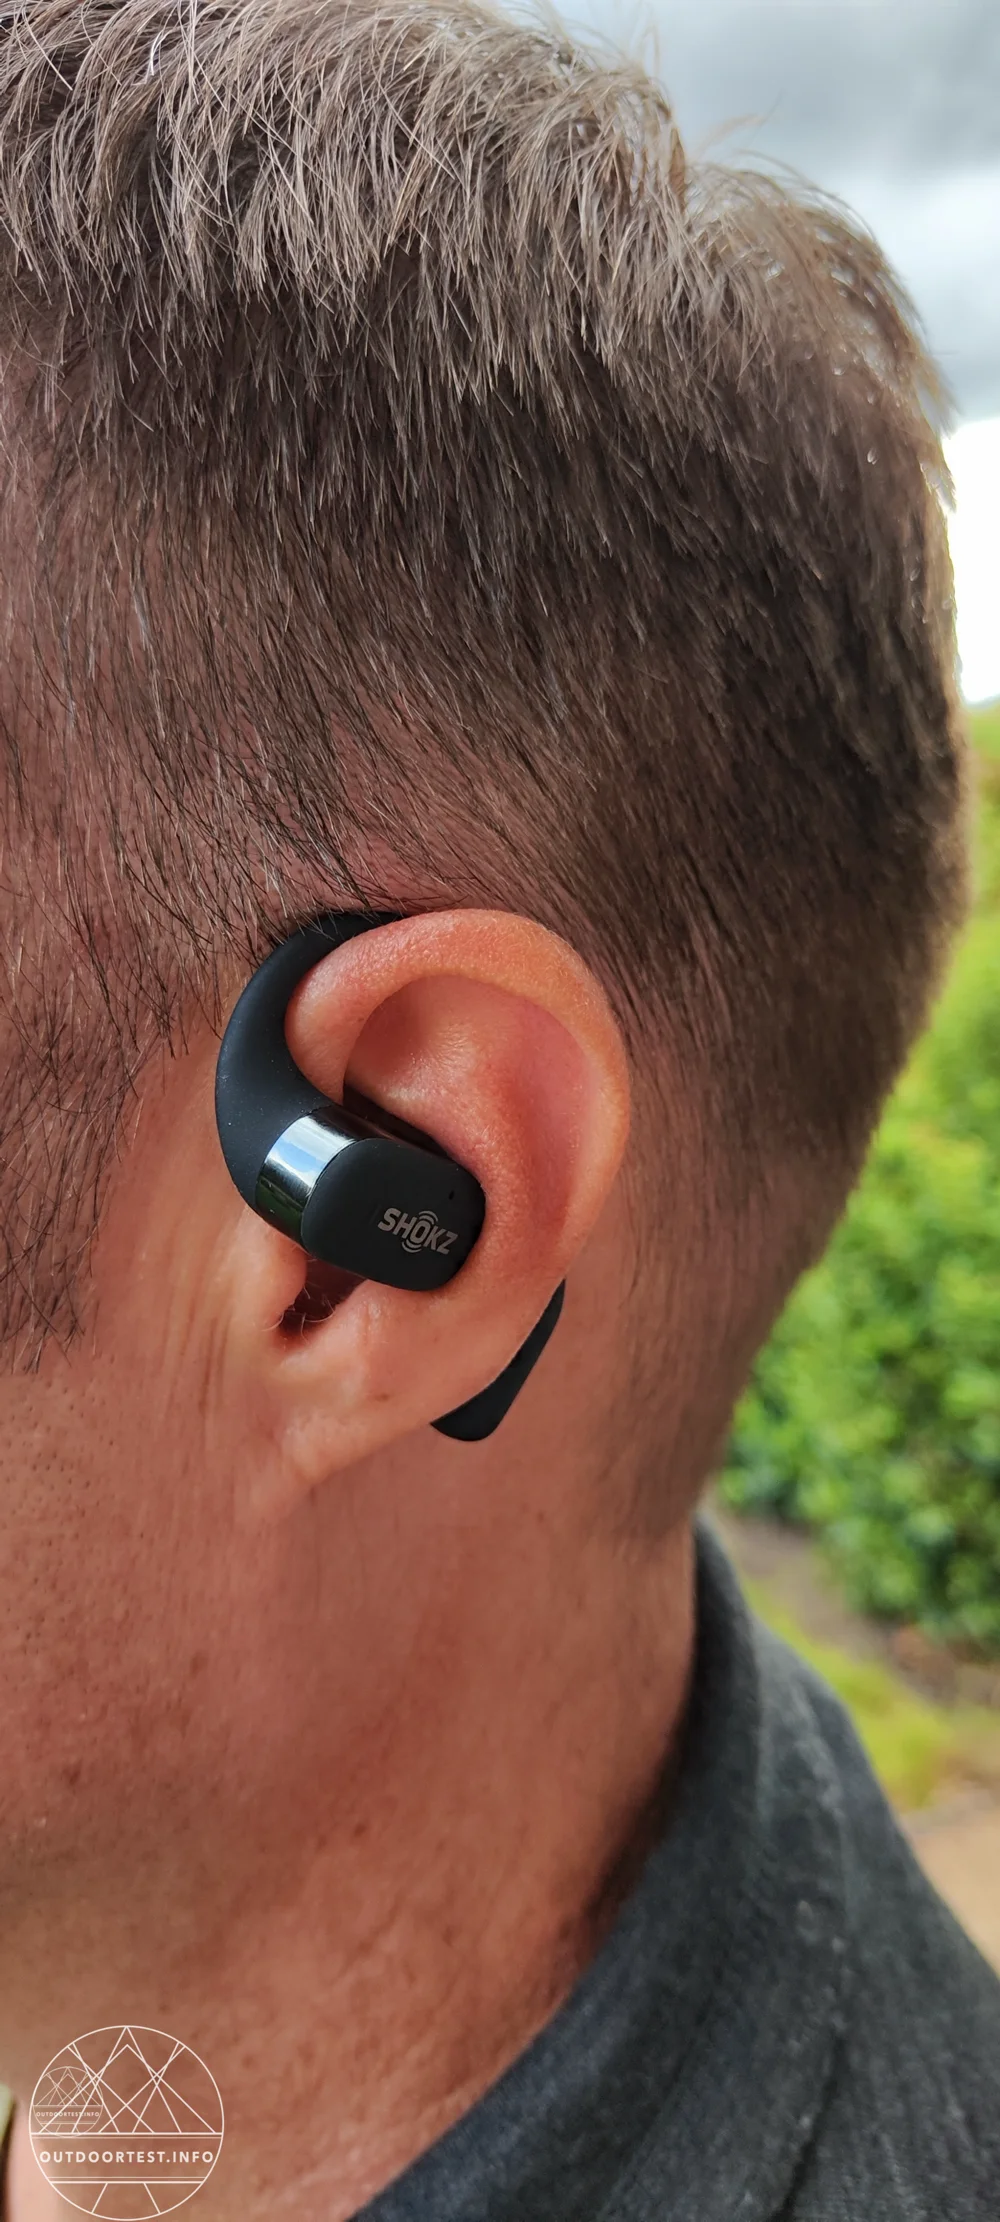 Shokz OpenFit Open-Ear Ohrhörer